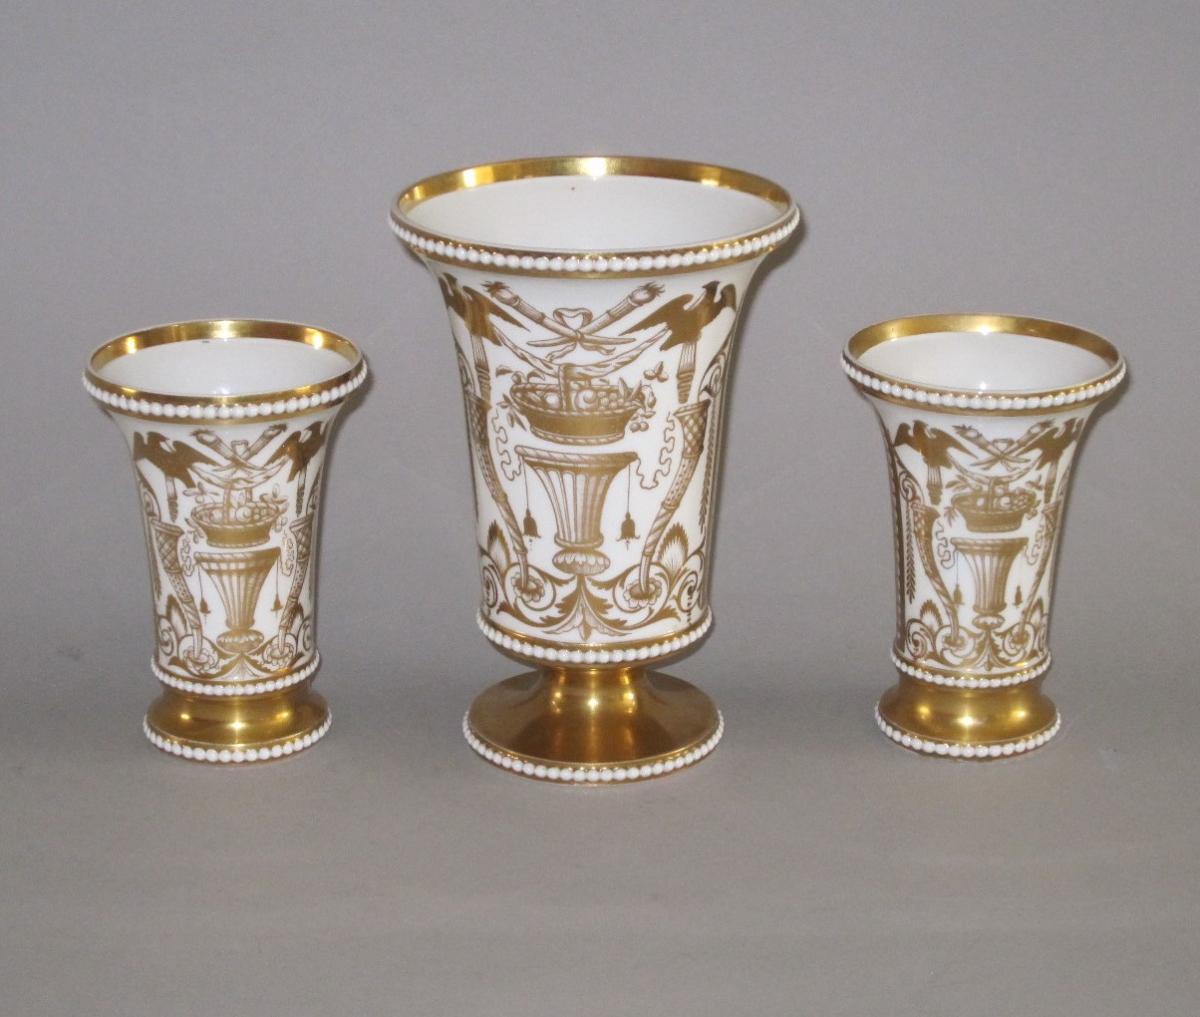 Garniture of Regency Spode vases